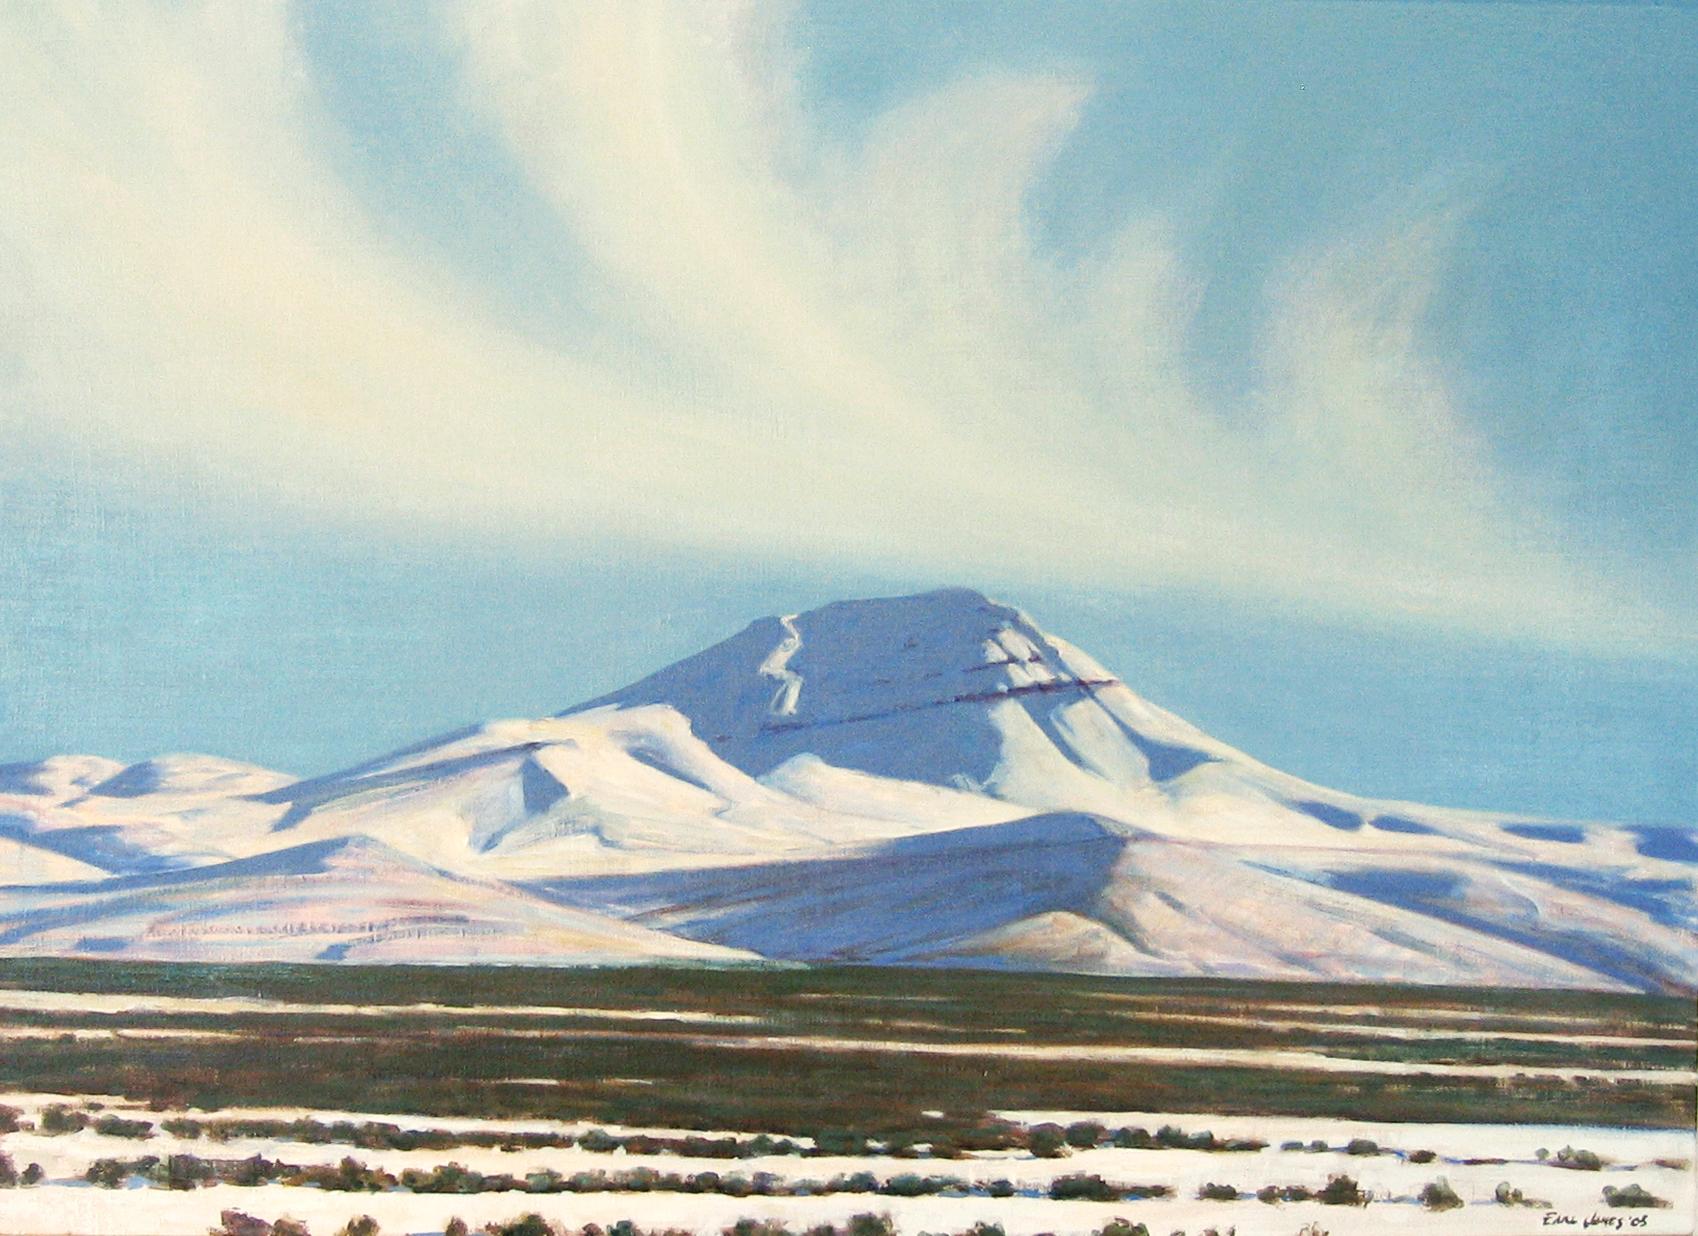 Earl Jones Landscape Painting - Battle Mountain, Nevada